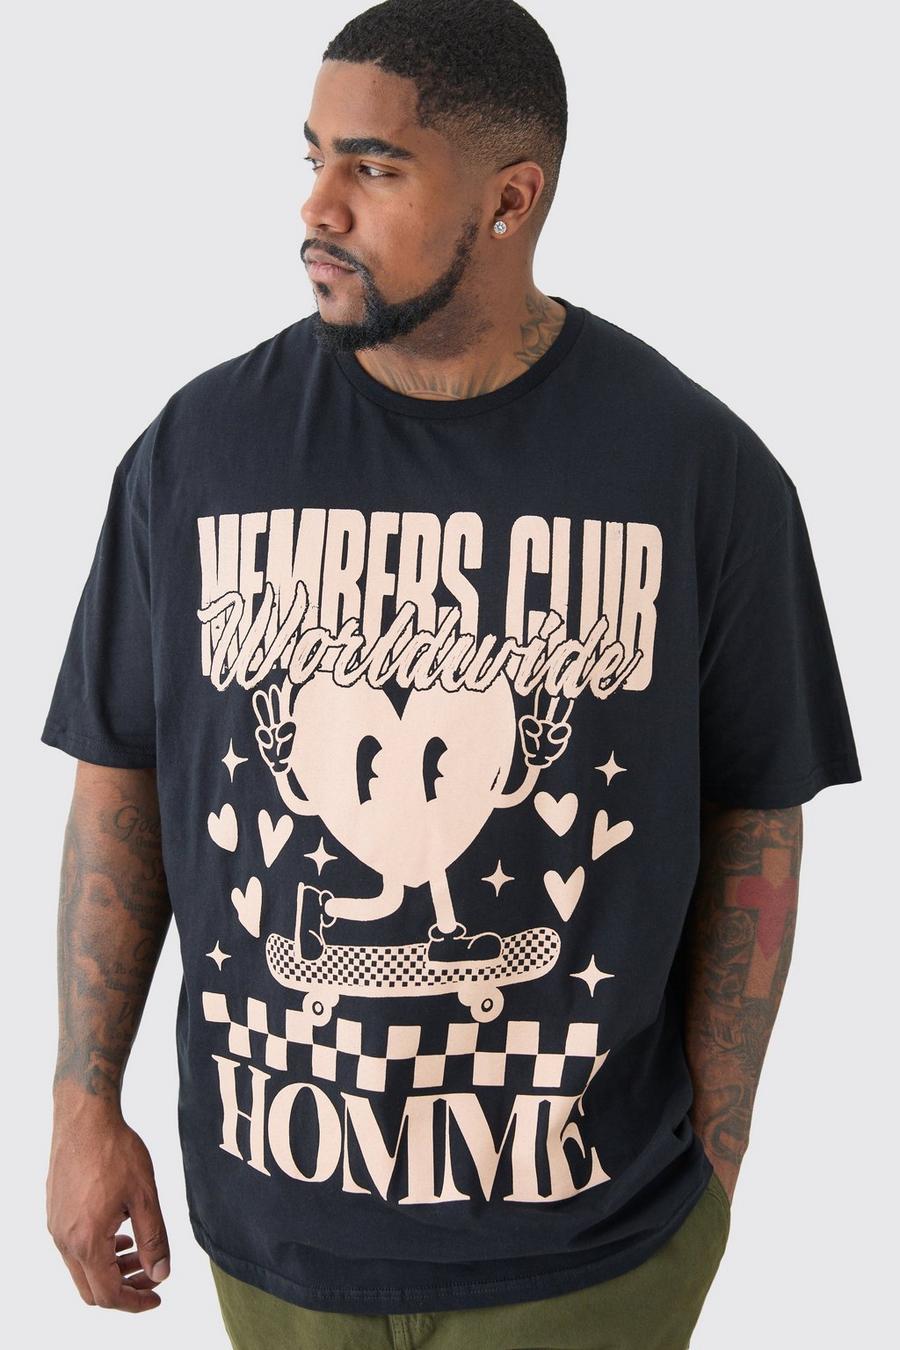 Plus Members Club Worldwide T-shirt In Black image number 1